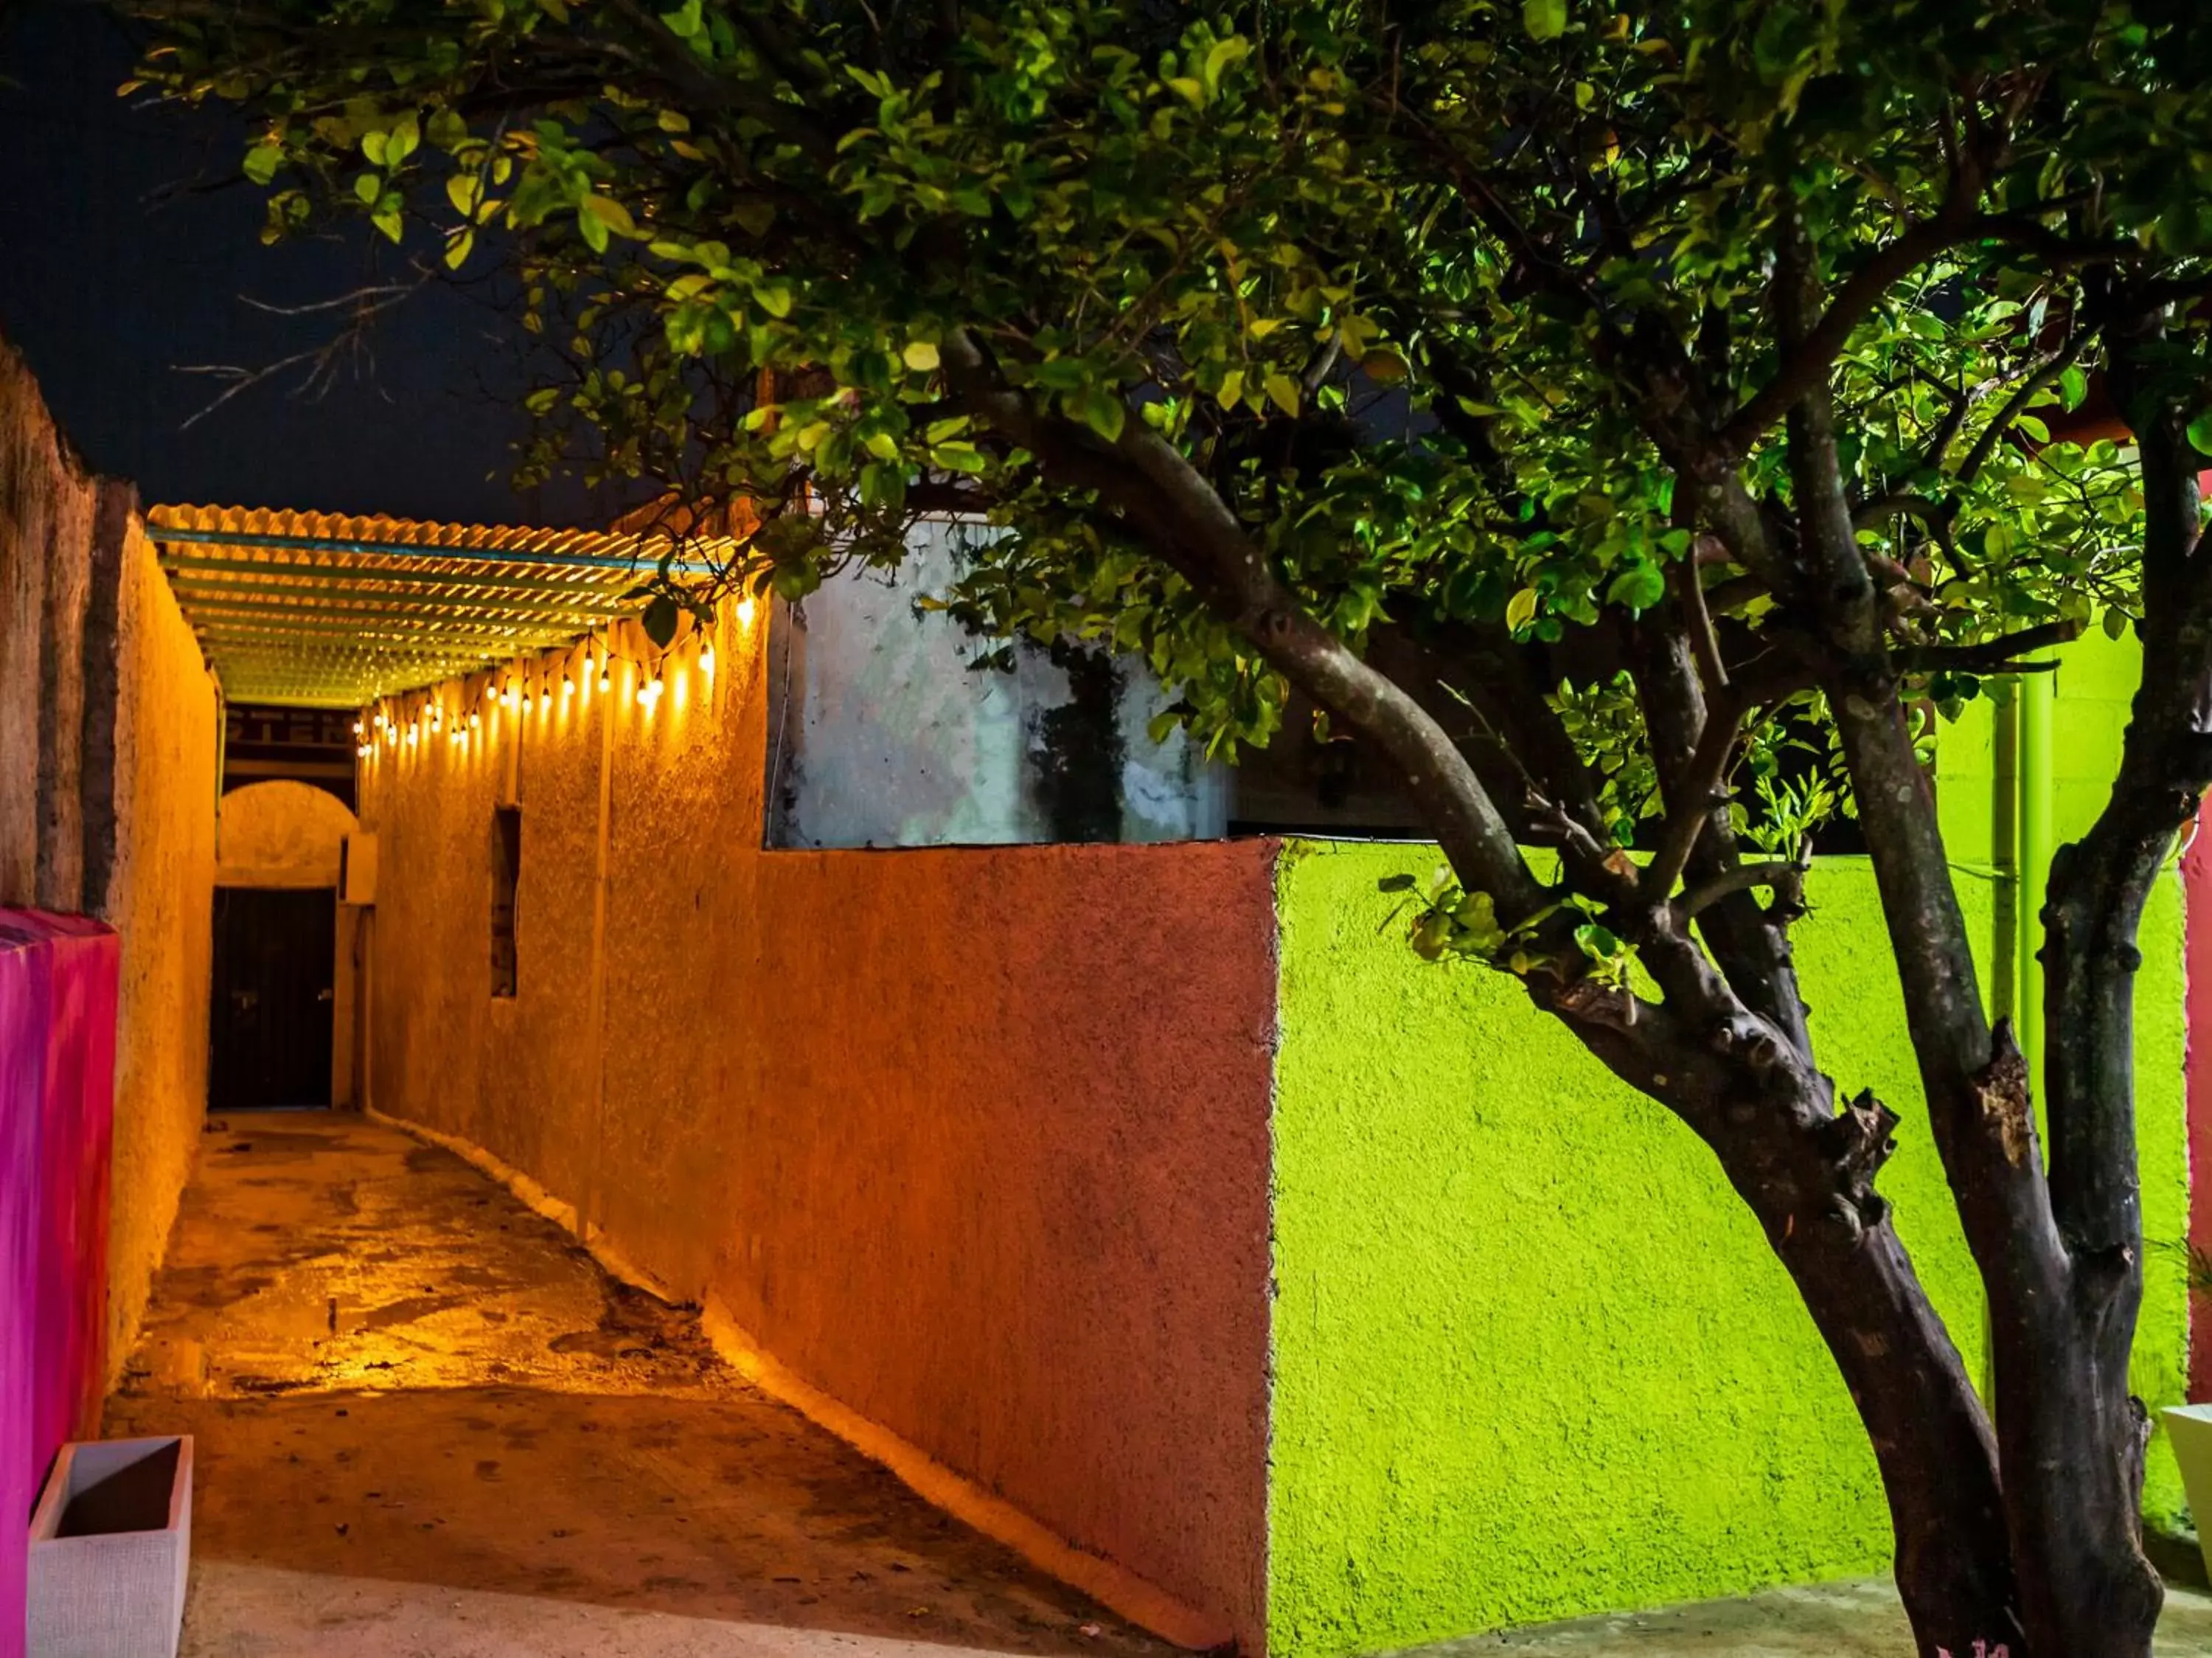 Facade/entrance in Casa Cuevas & Amaro